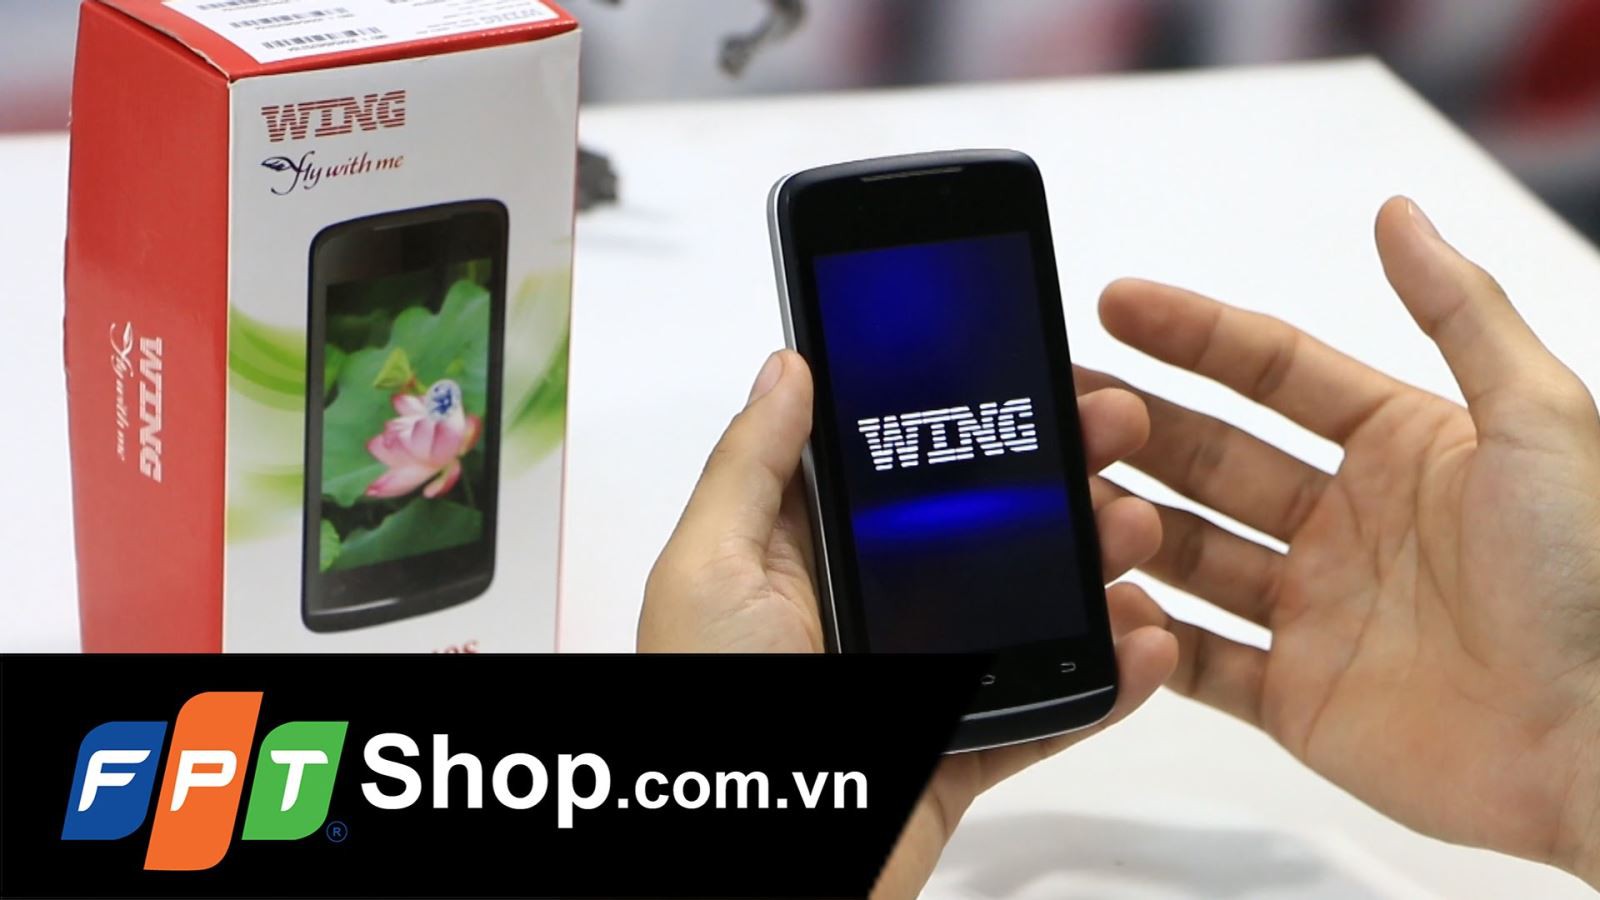 Wing Hero 40S sở hữu màn hình cảm ứng điện dung đa điểm 4 inch sắc nét